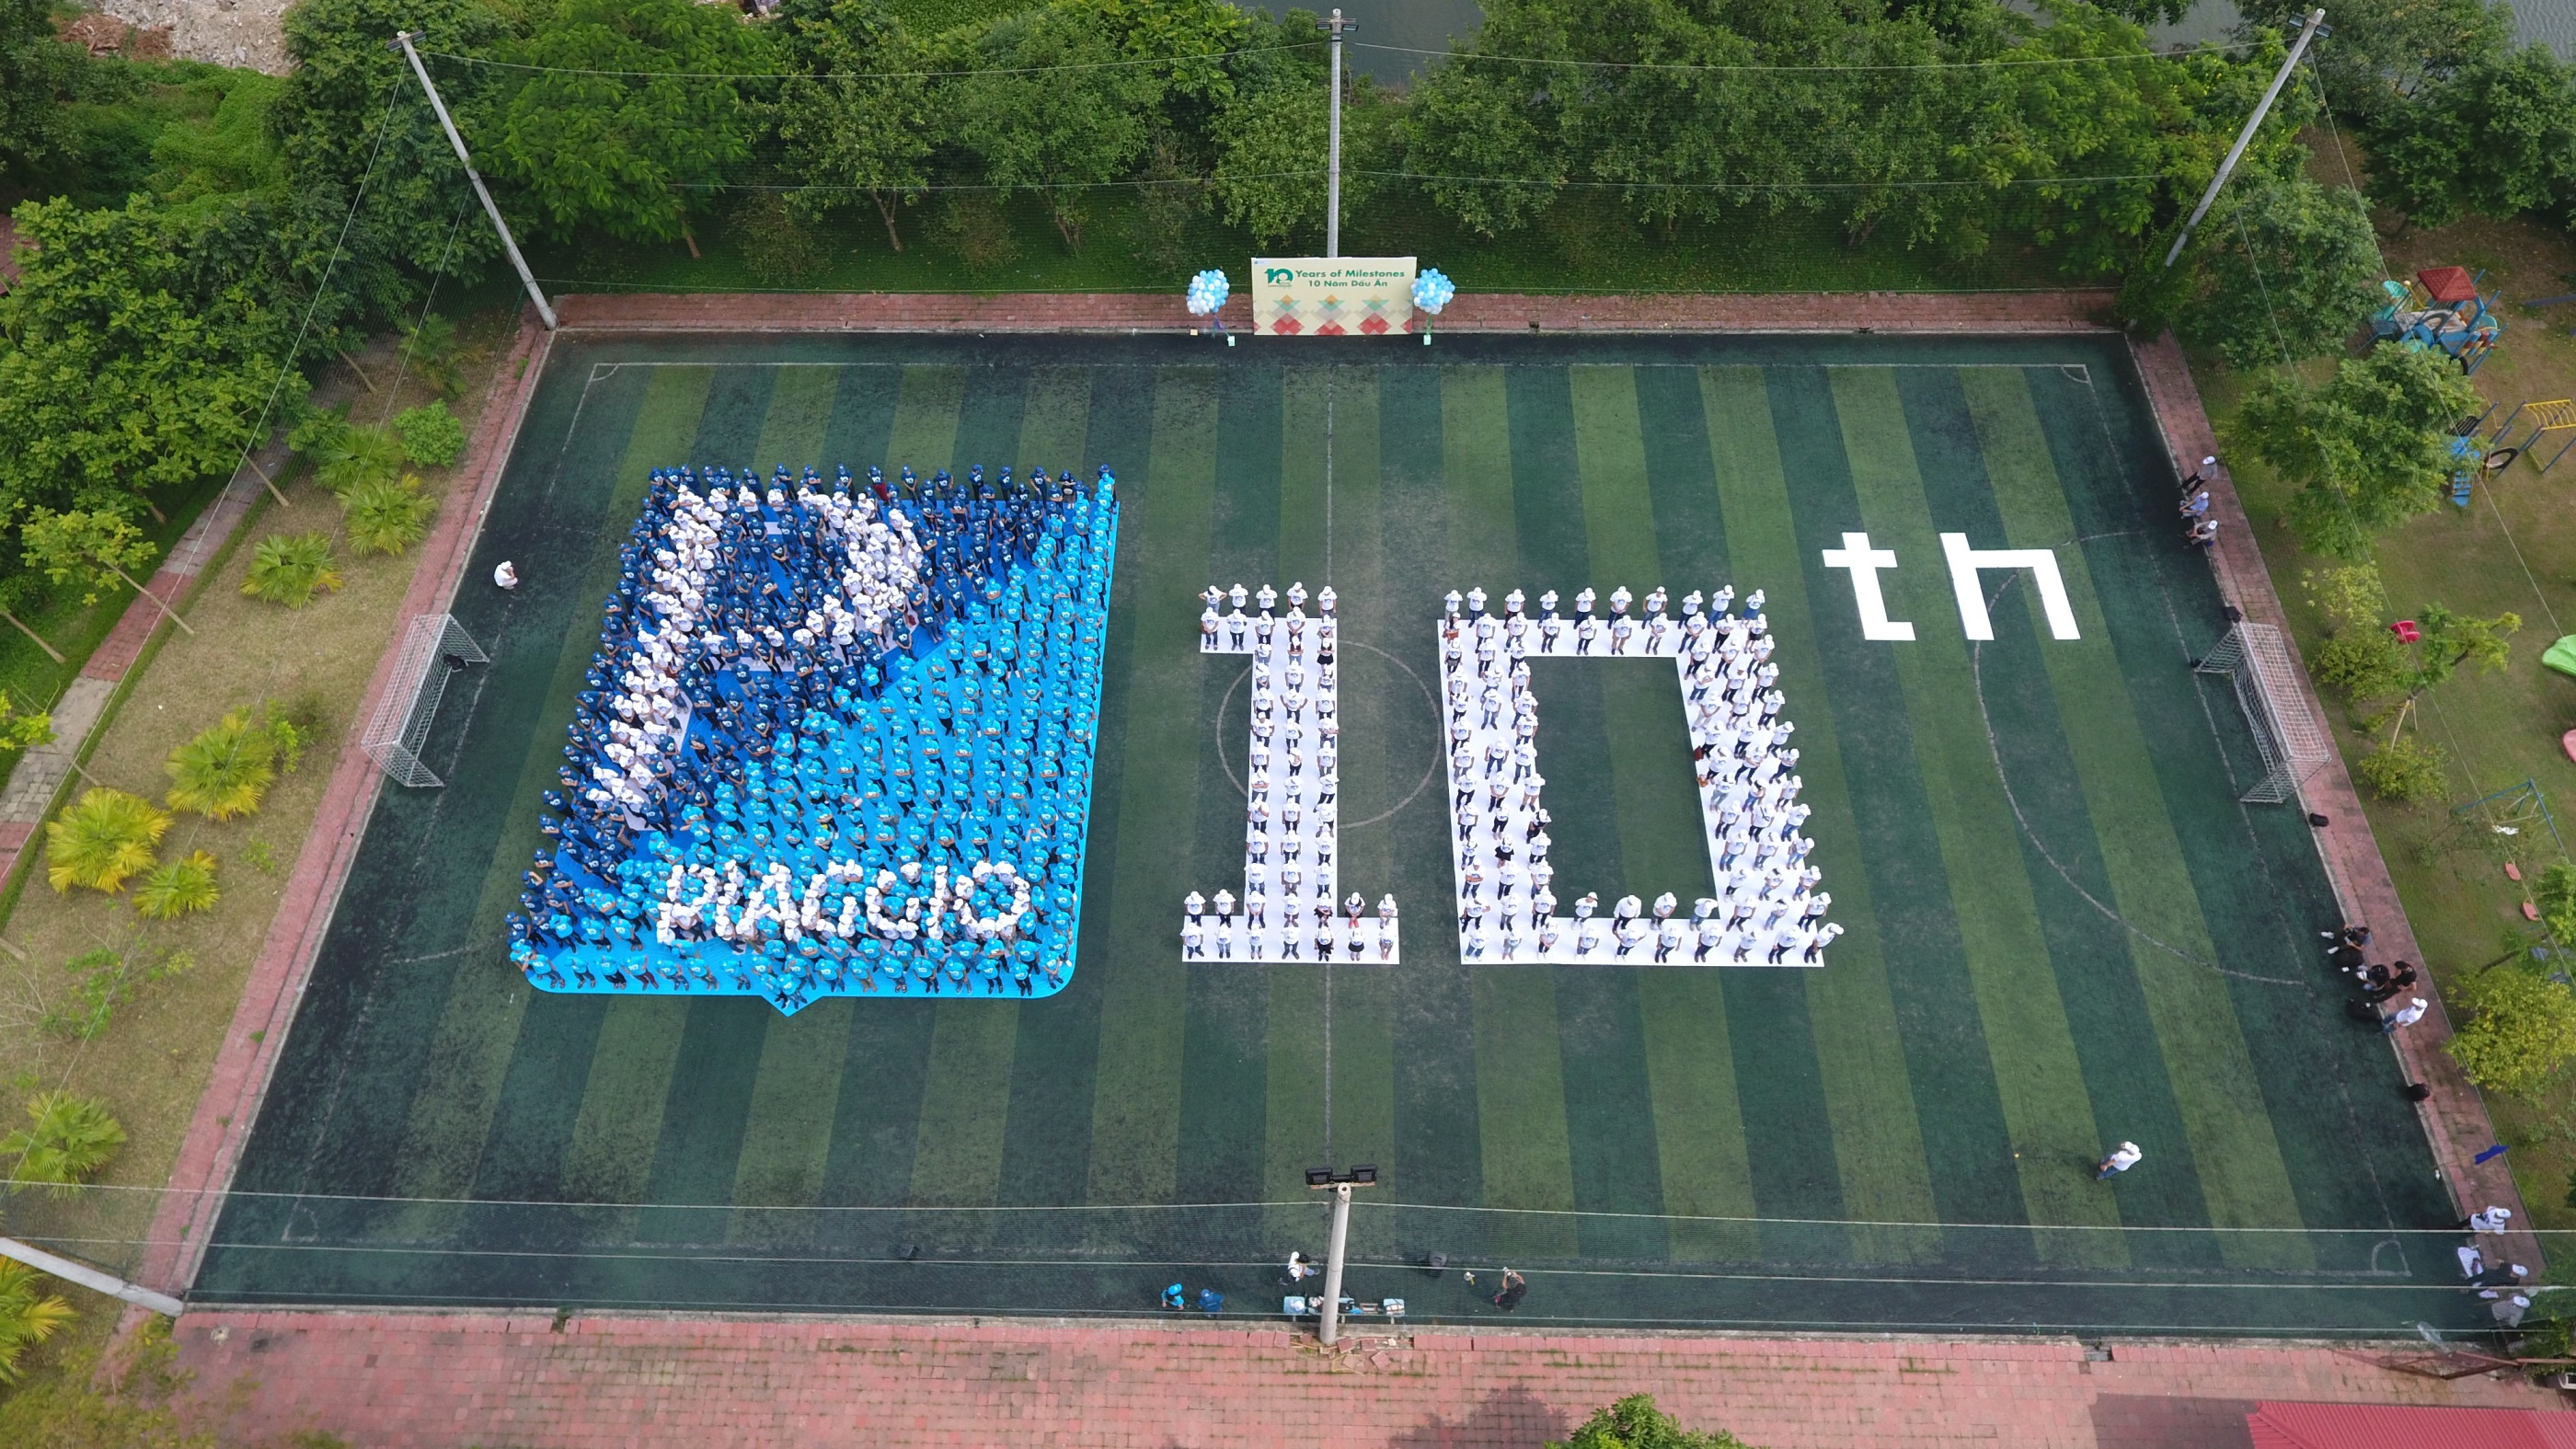 Piaggio ghi dấu 10 năm chính hãng tại Việt Nam